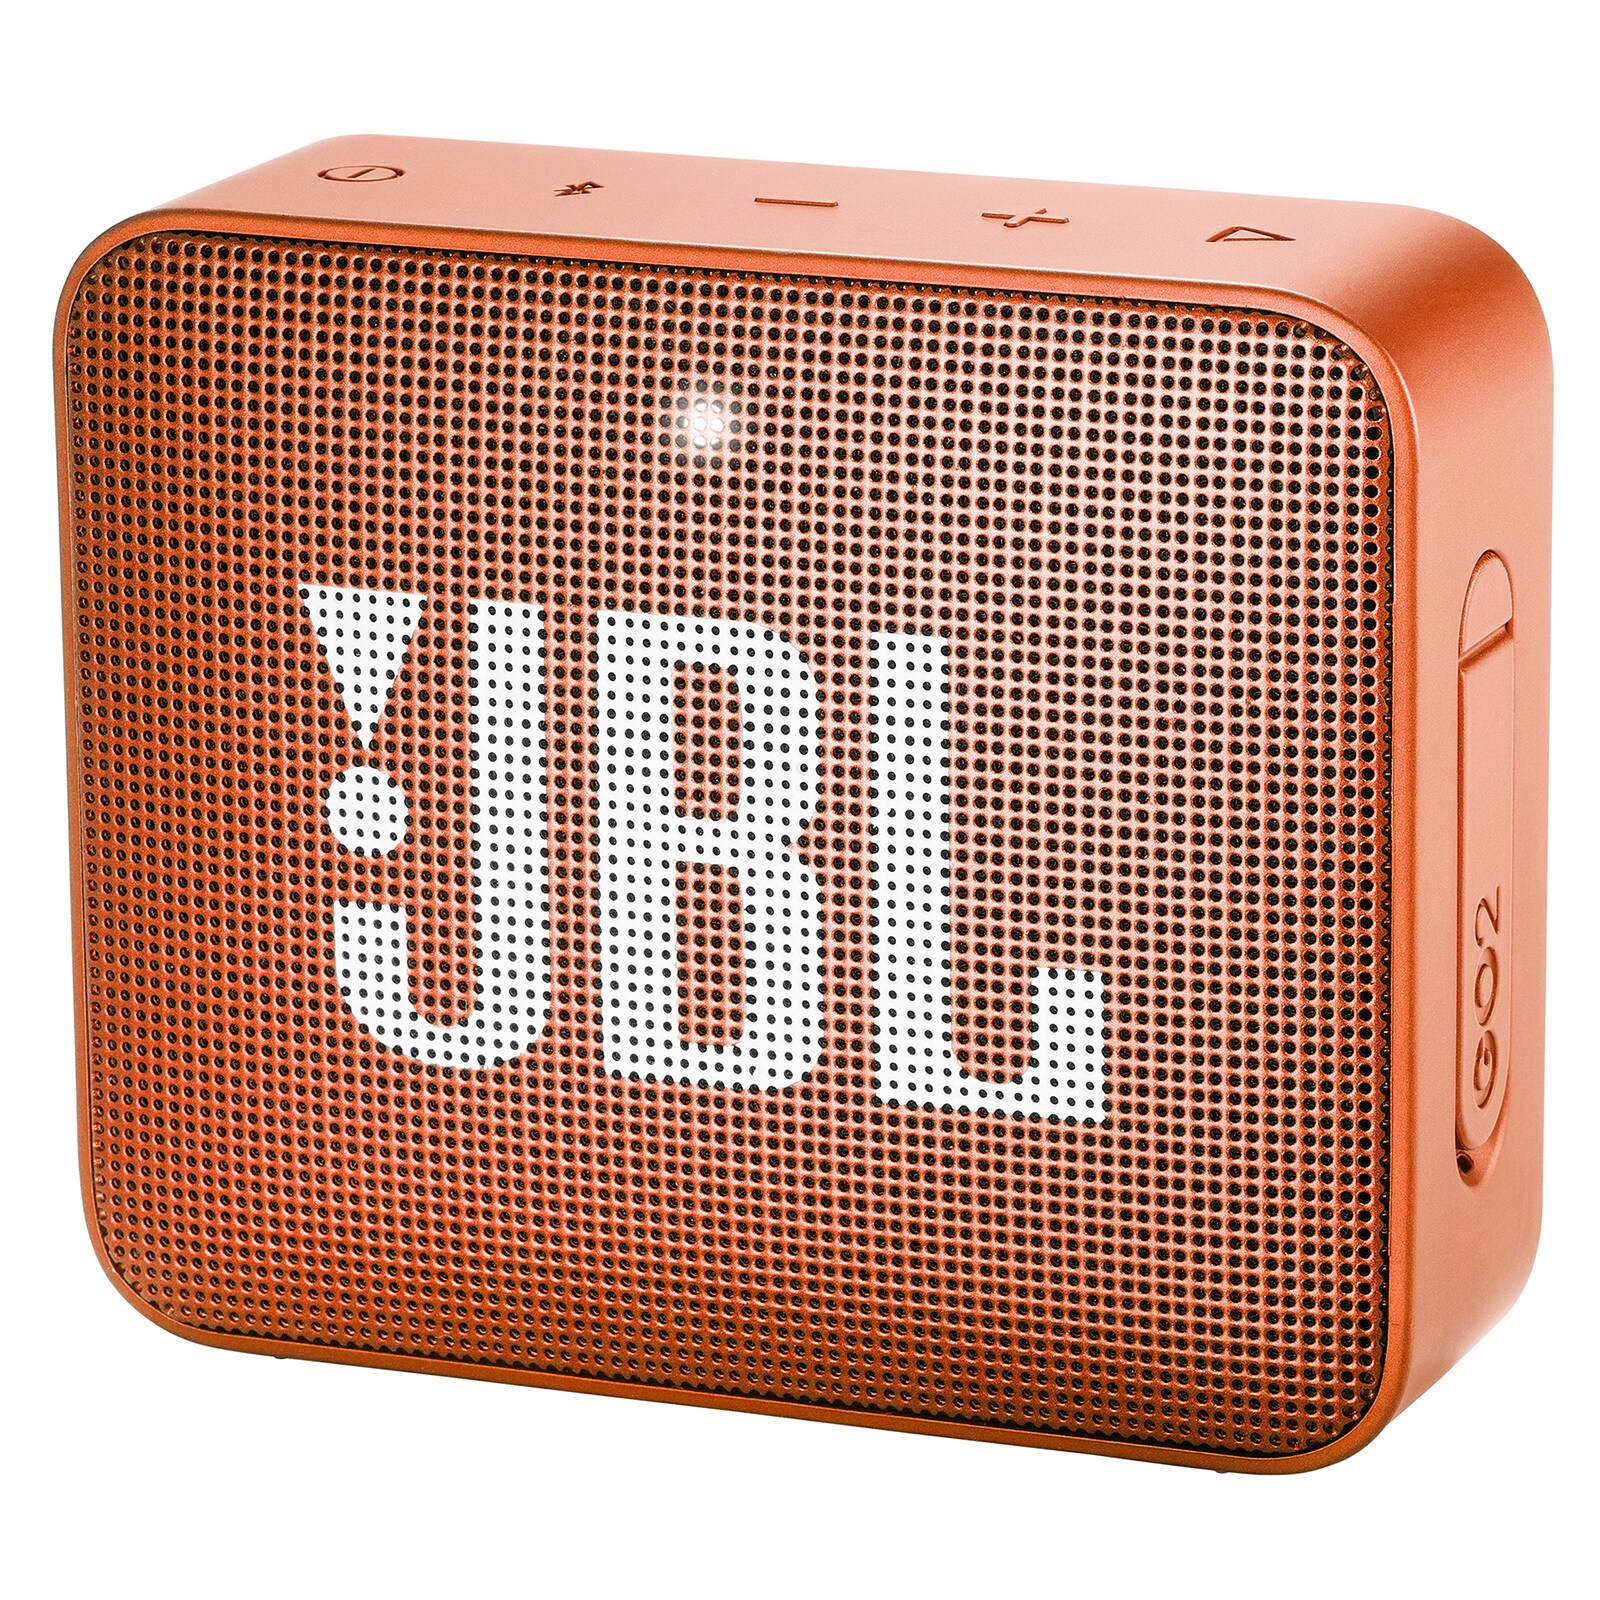 JBL GO 2 langaton kaiutin (oranssi) - Gigantti verkkokauppa